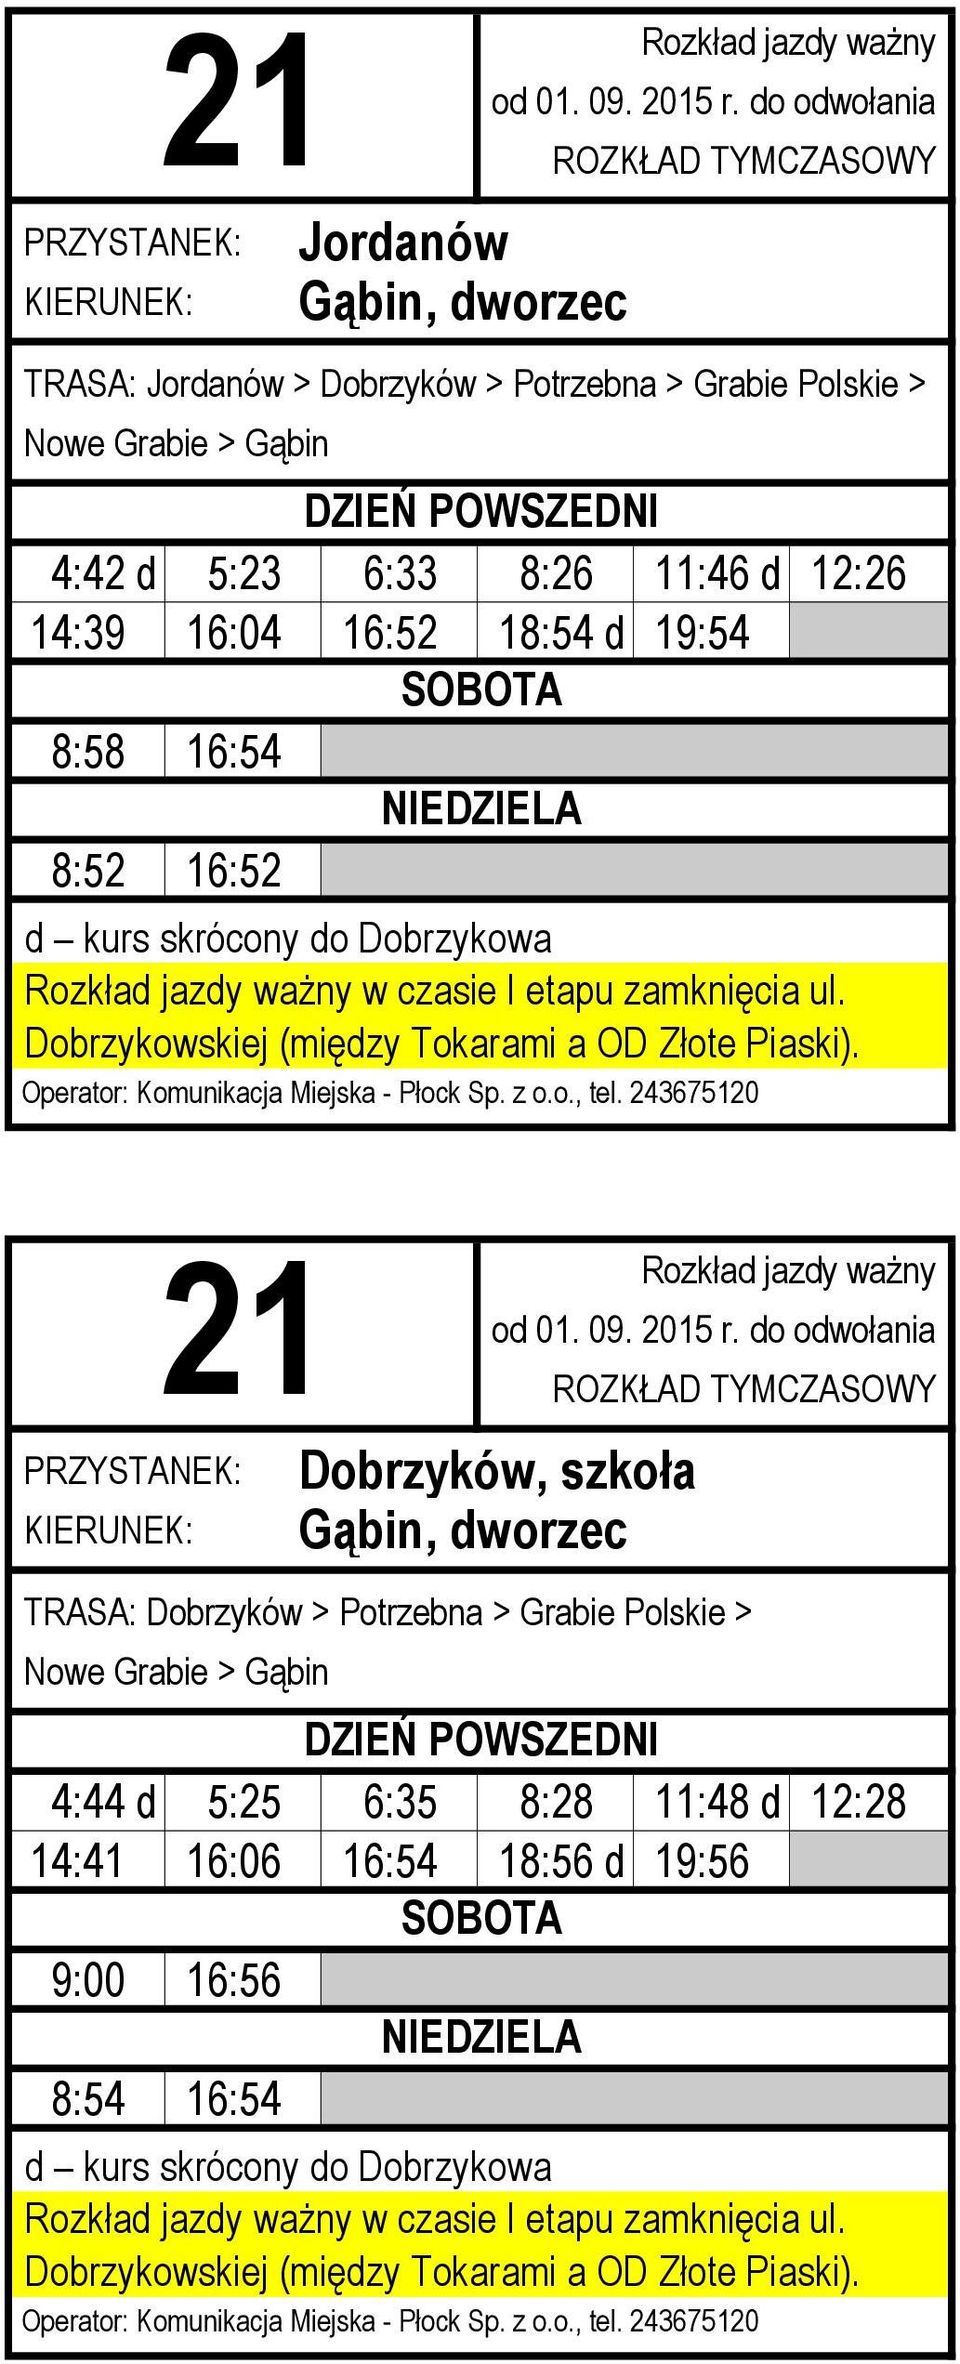 16:52 Dobrzyków, szkoła TRASA: Dobrzyków > Potrzebna > Grabie Polskie > Nowe Grabie >